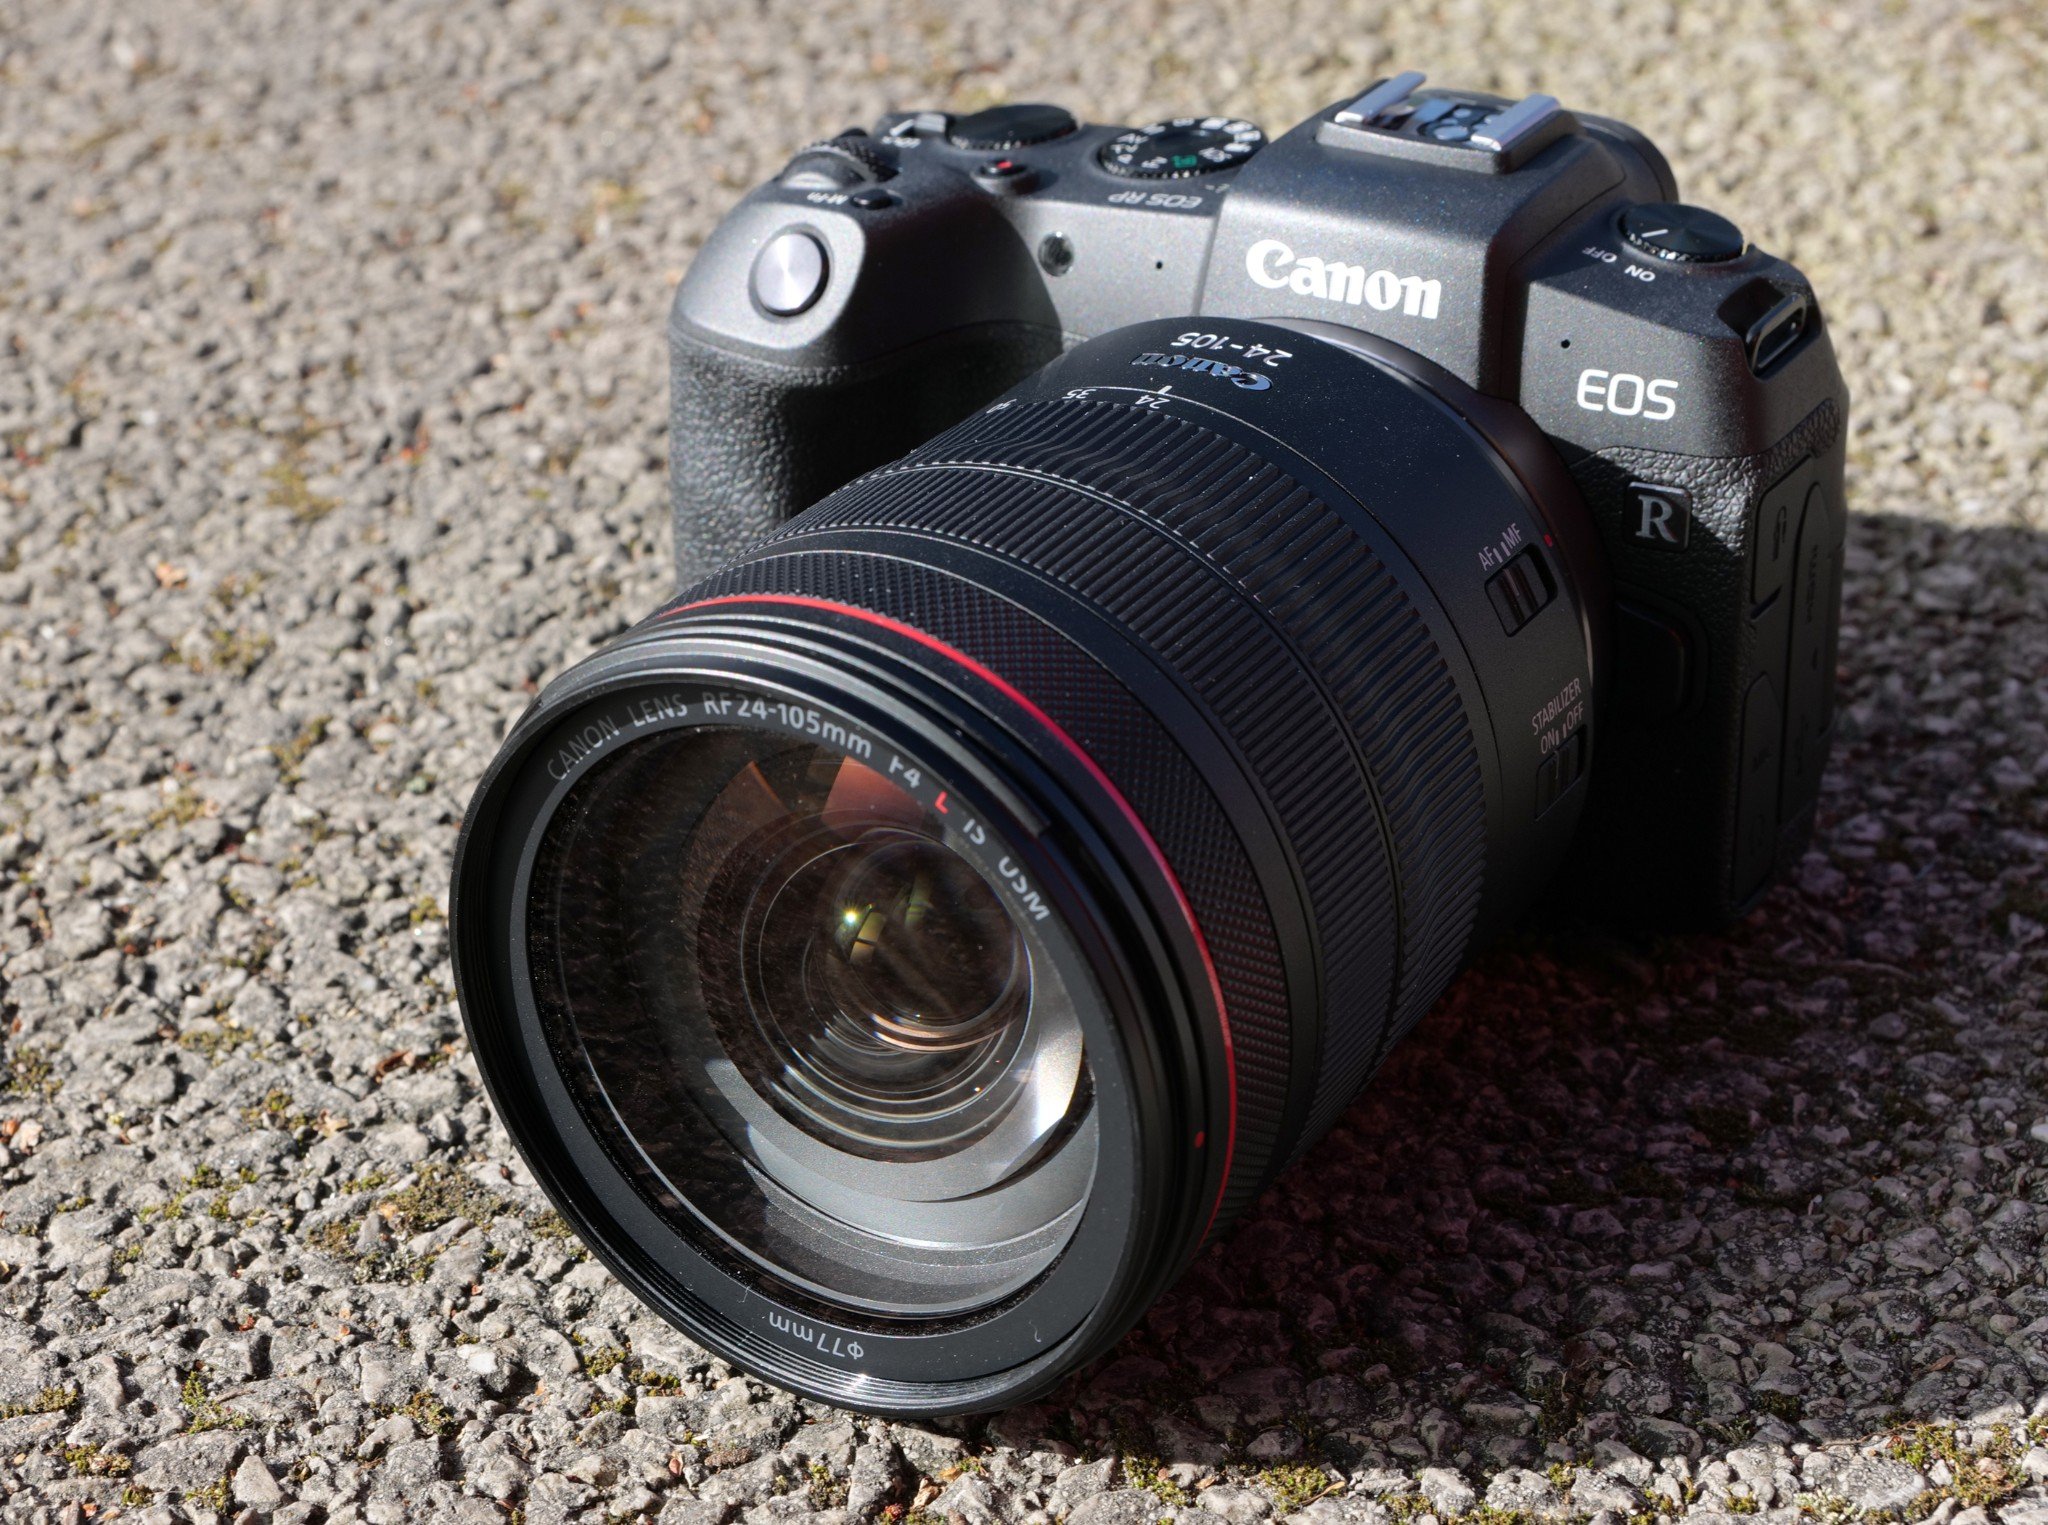 Canon cập nhật phần mềm cho EOS RP -thêm tính năng quay video 24fps, bổ sung thêm ống kính